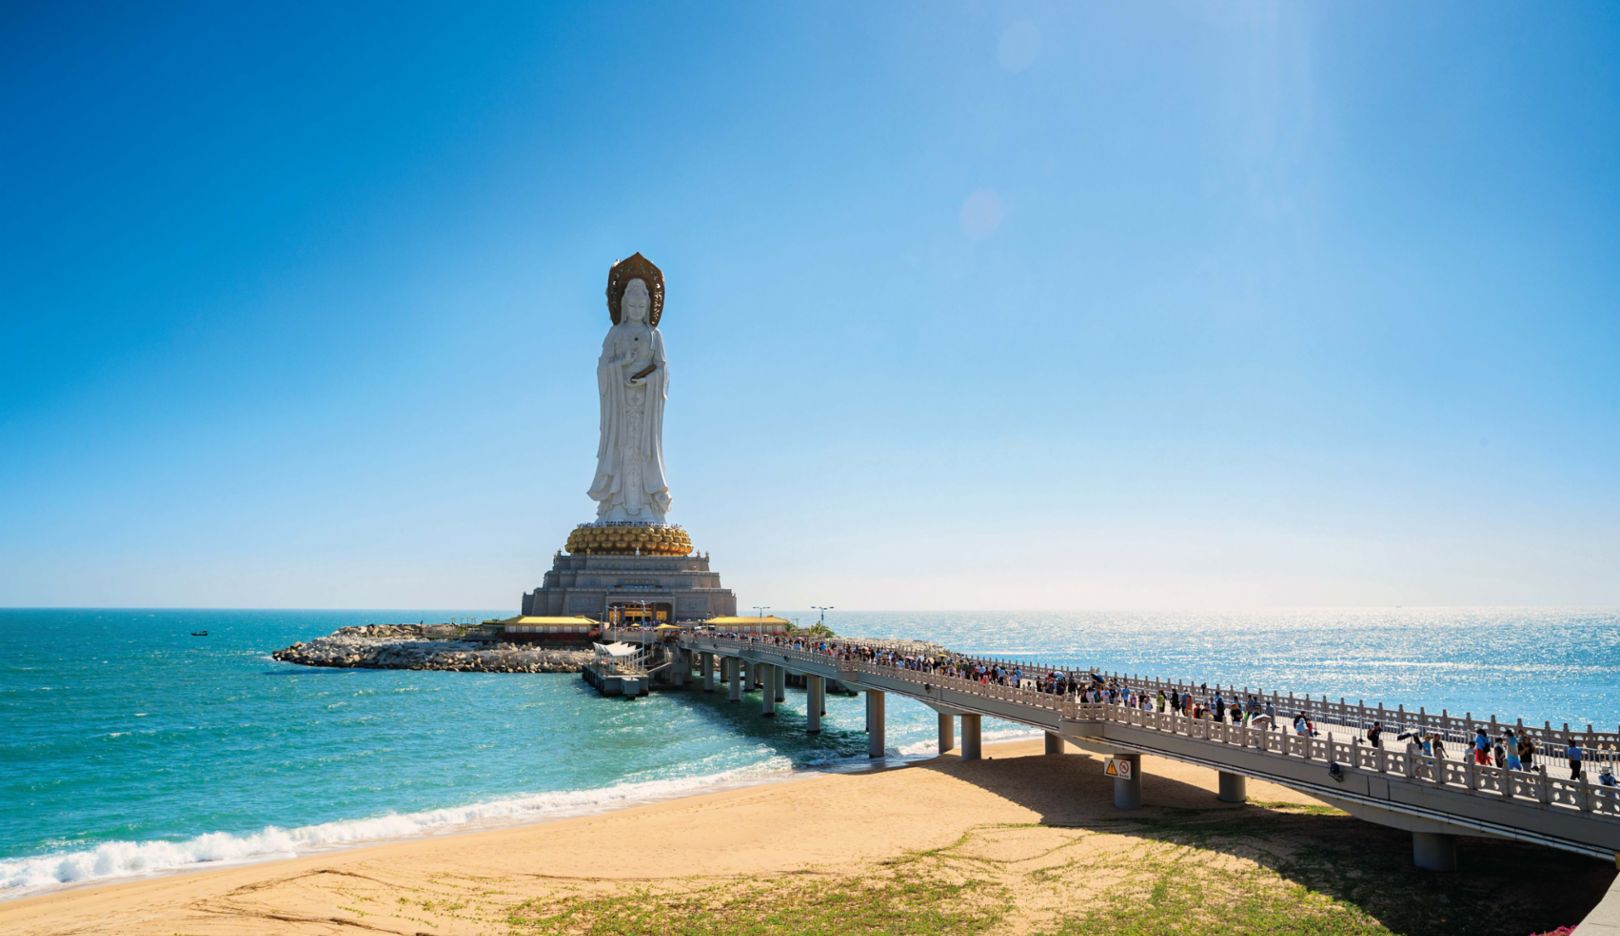 Bendición a punto – Estatua de Guanyin Pusa: